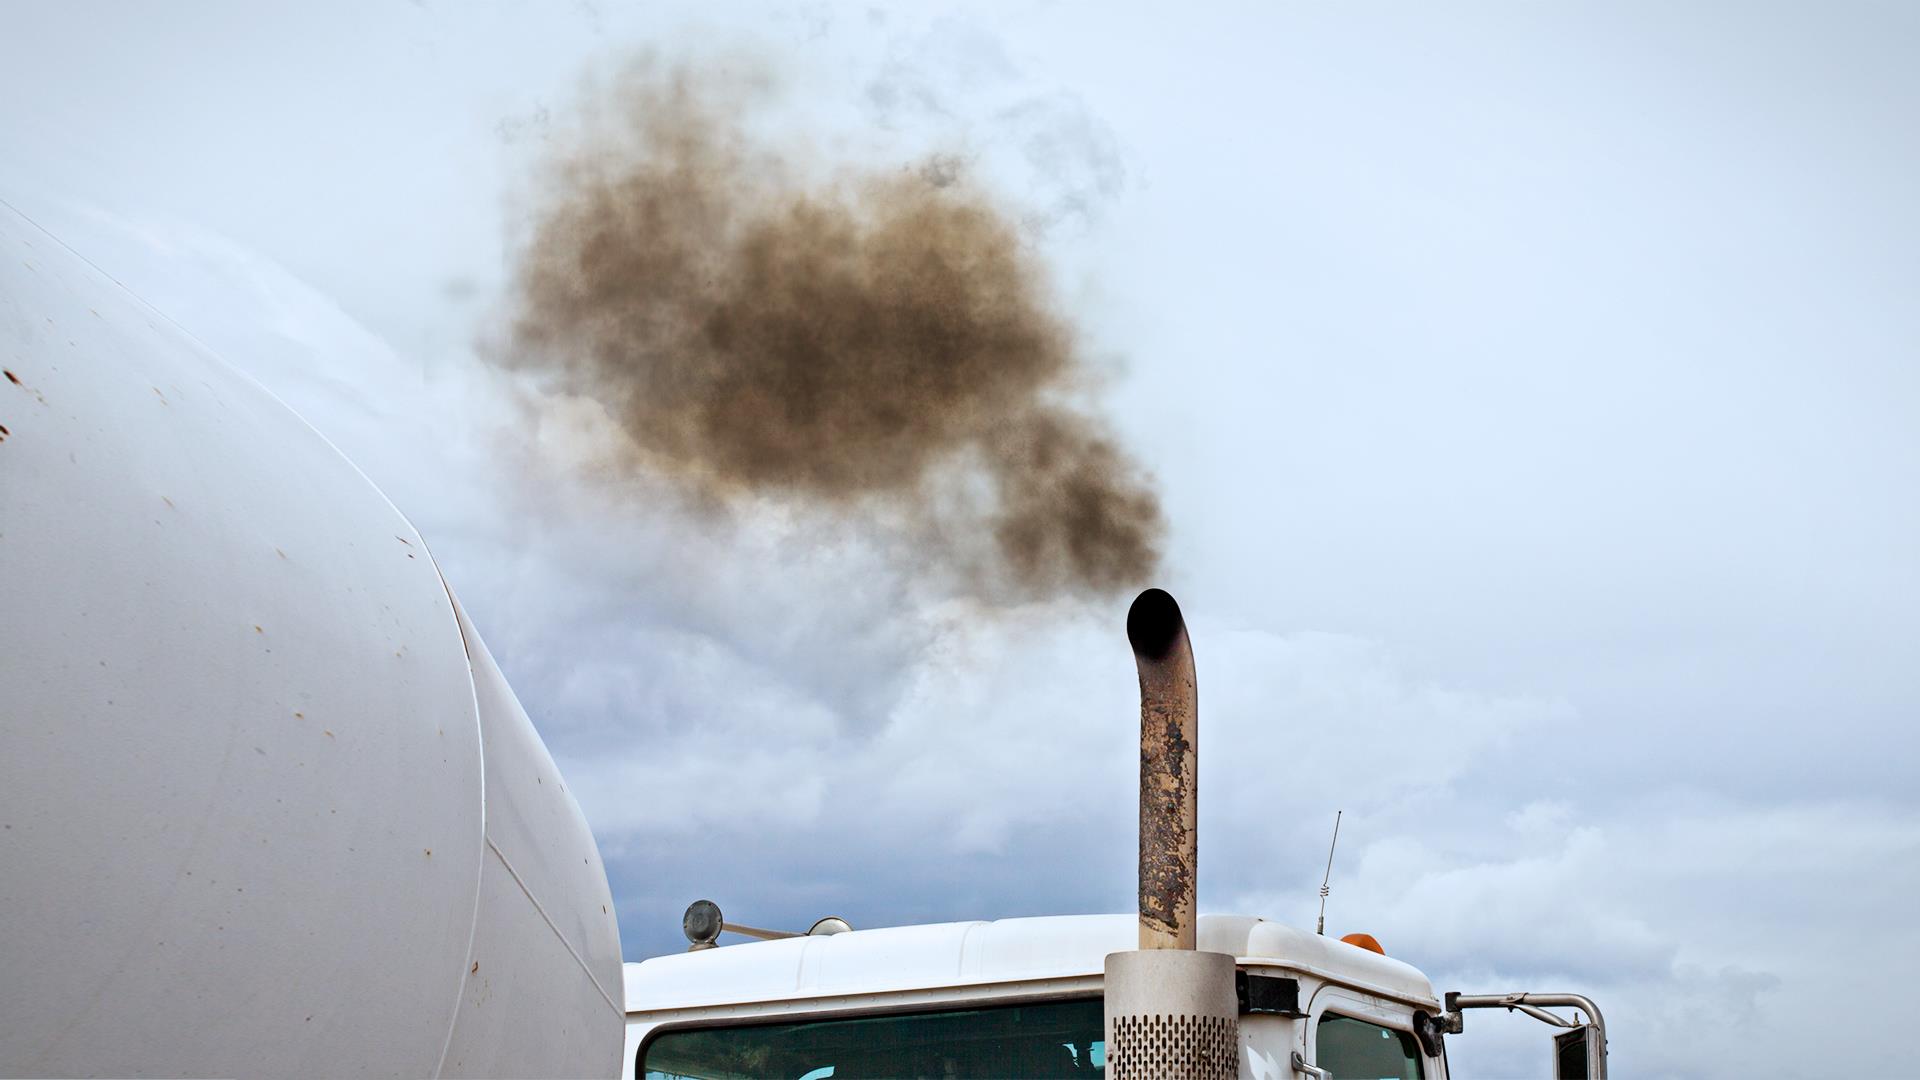 L’impact du convoi des camionneurs sur la pollution atmosphérique à Ottawa
L’impact du convoi des camionneurs sur la pollution atmosphérique à Ottawa